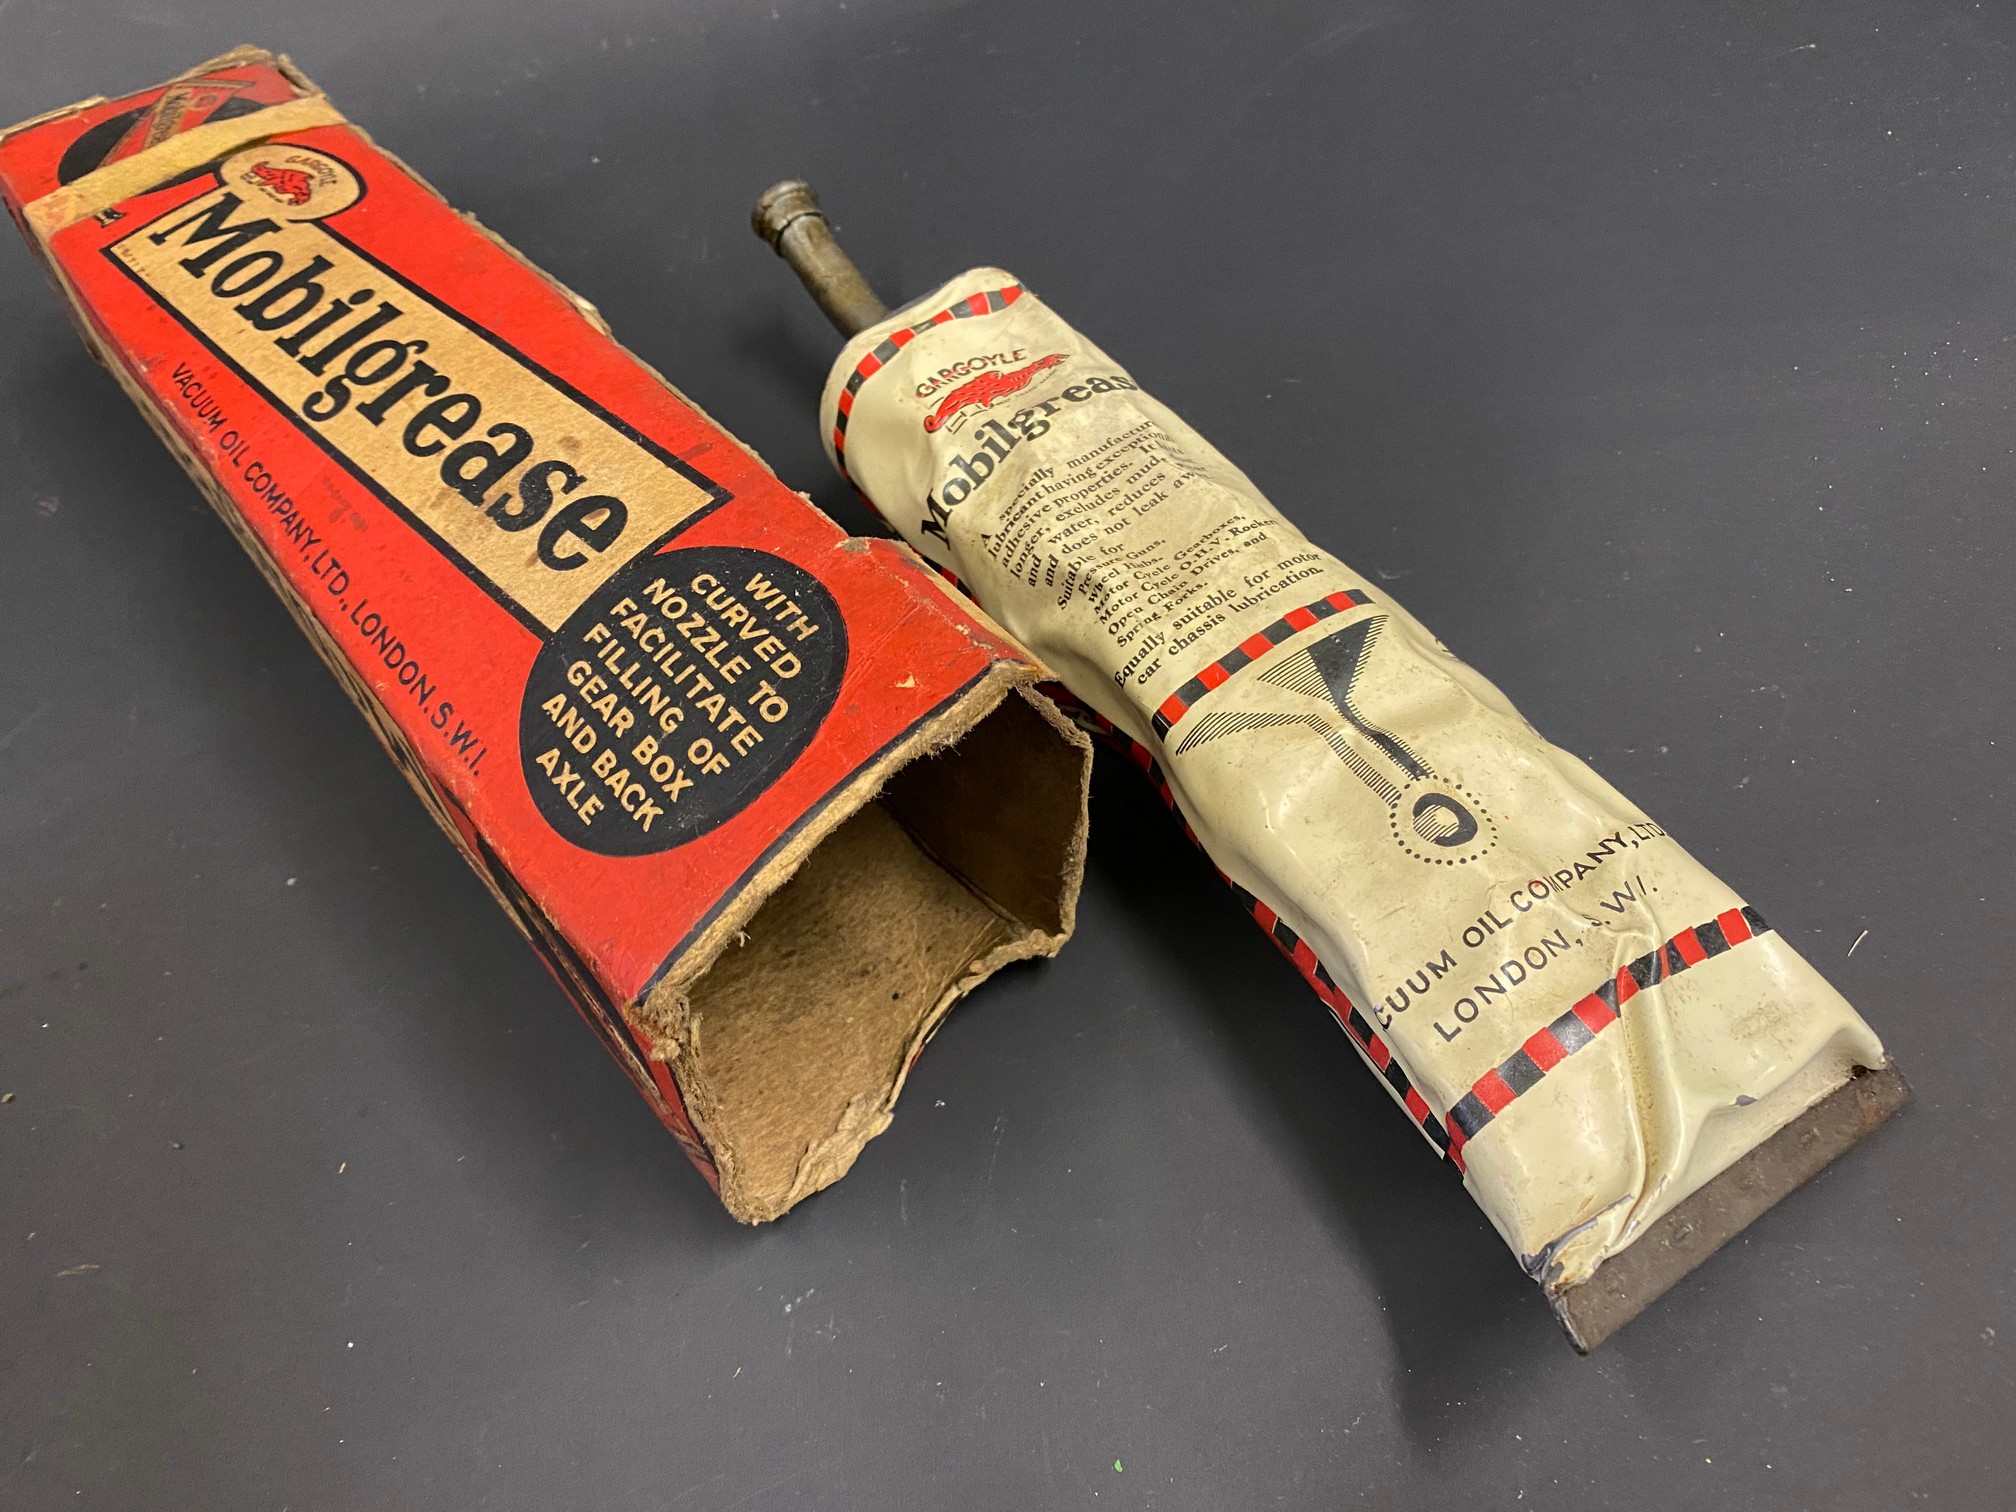 A Mobilgrease tube in original box. - Image 2 of 2